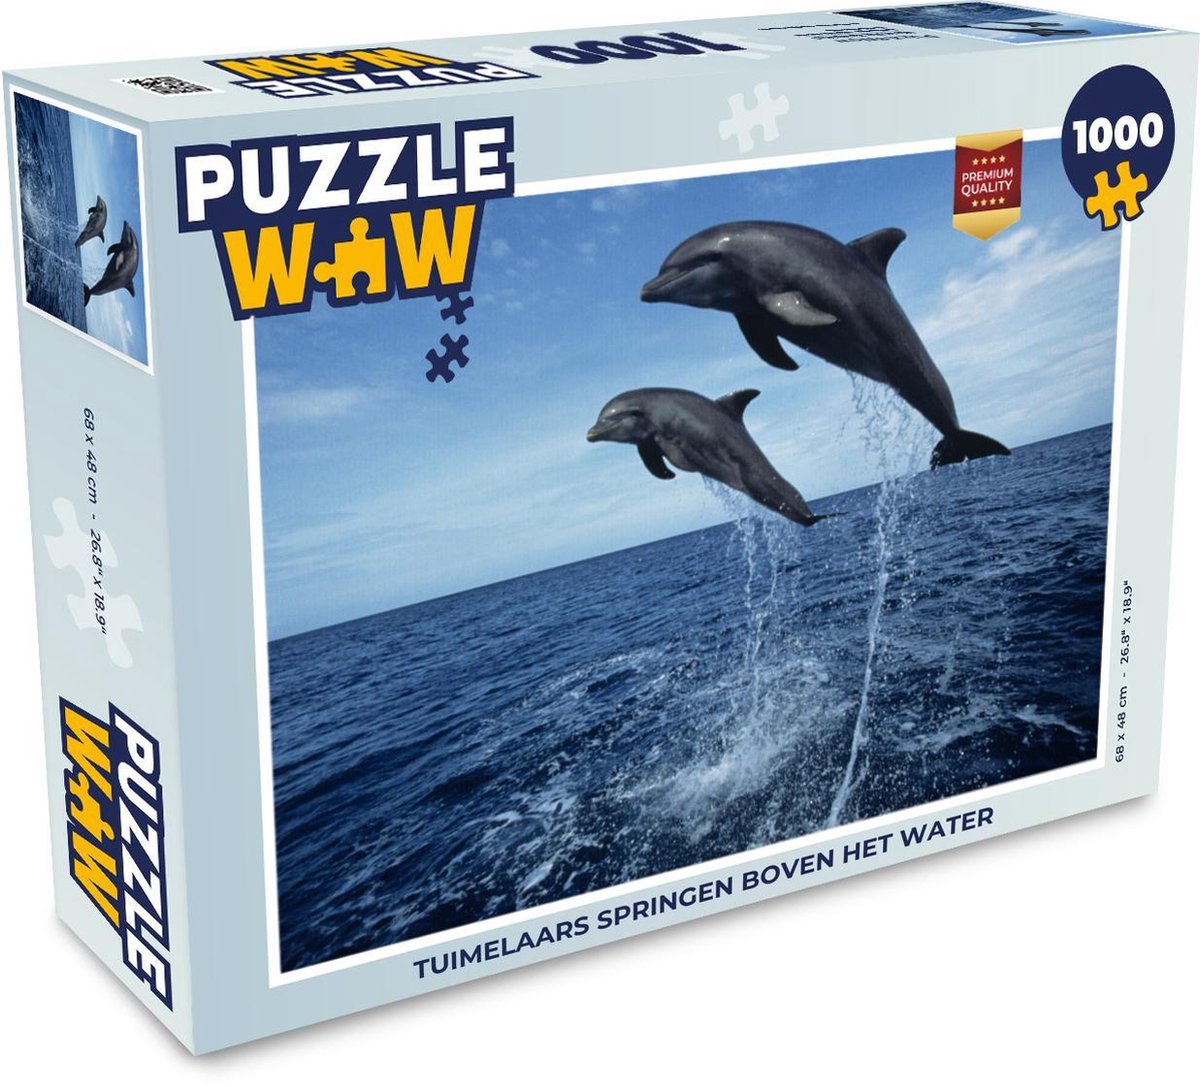 Afbeelding van product Puzzel 1000 stukjes volwassenen Dolfijn 1000 stukjes - Tuimelaars springen boven het water - PuzzleWow heeft +100000 puzzels